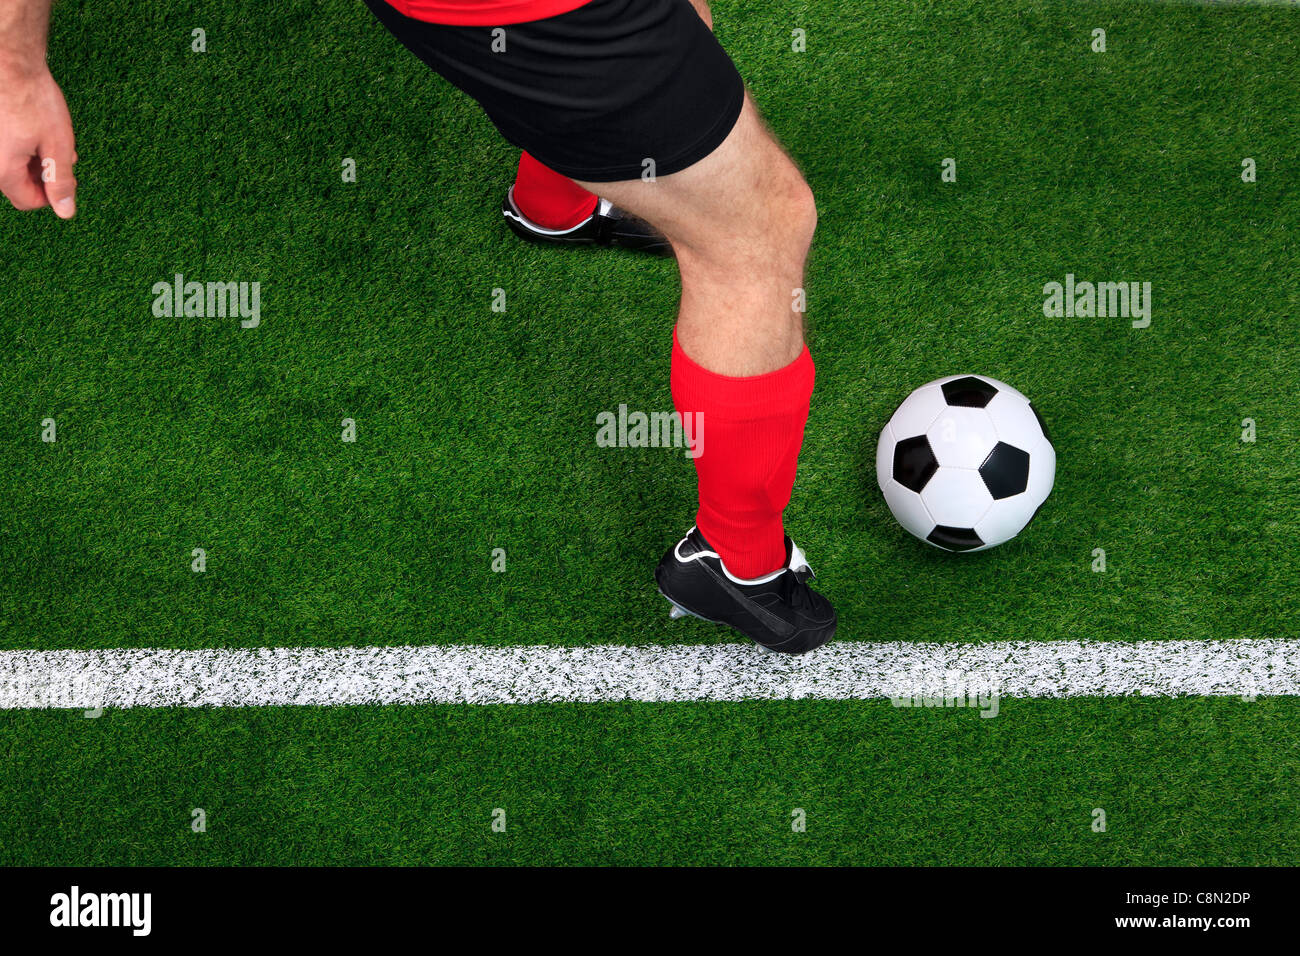 Fotografía aérea de un balón de fútbol o soccer player regatear con el balón al margen Foto de stock